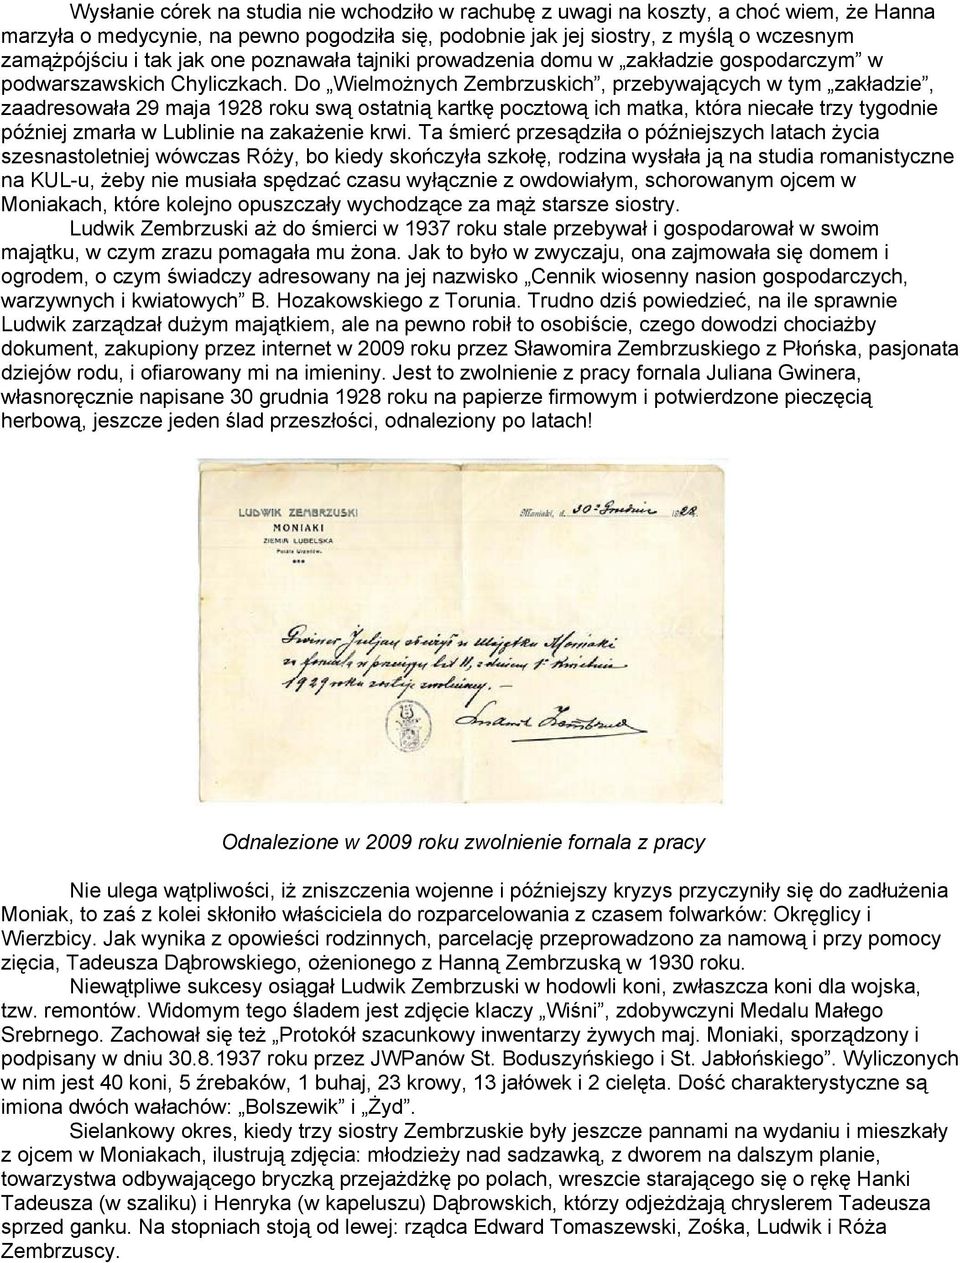 Do Wielmożnych Zembrzuskich, przebywających w tym zakładzie, zaadresowała 29 maja 1928 roku swą ostatnią kartkę pocztową ich matka, która niecałe trzy tygodnie później zmarła w Lublinie na zakażenie